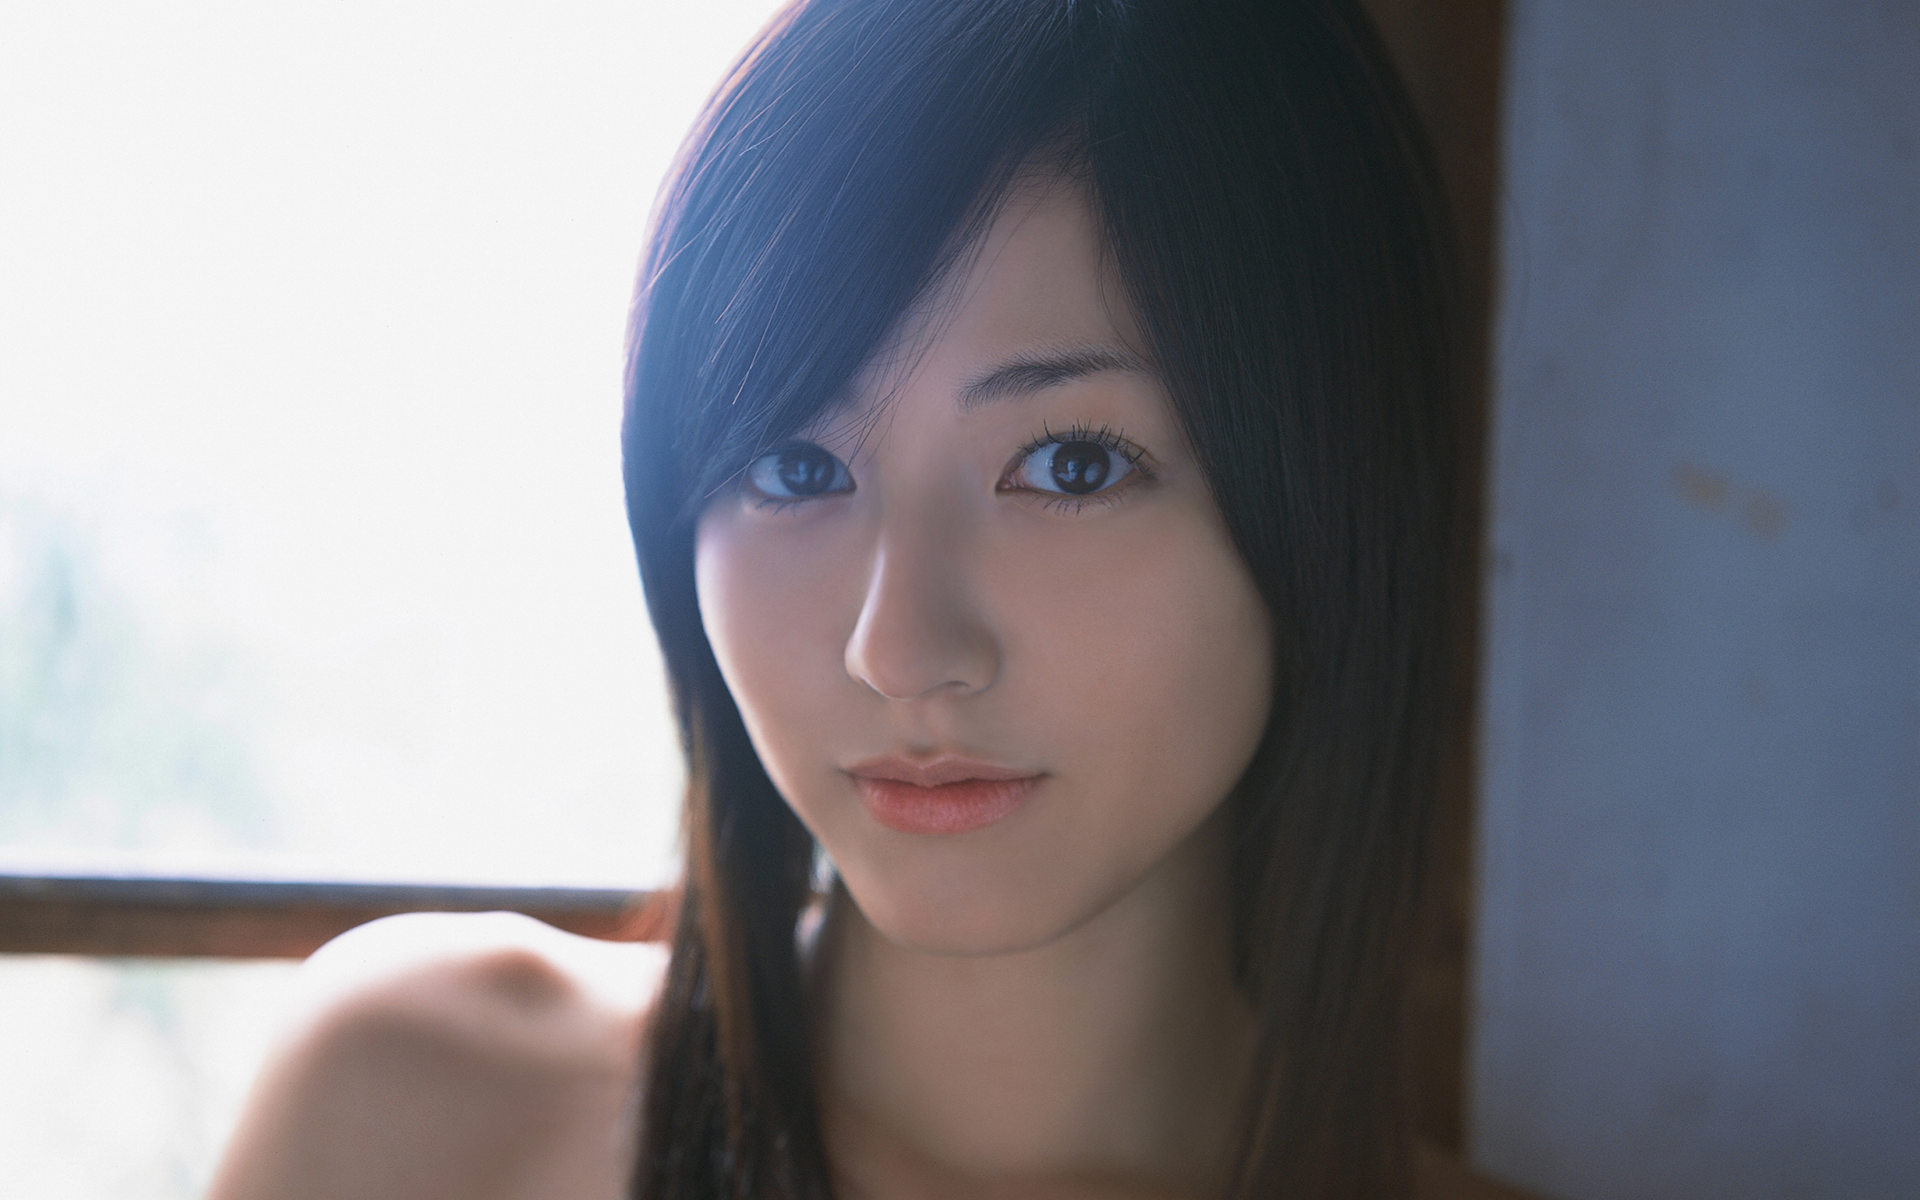 Asian Women Japan Yumi Sugimoto Smiling Model 1920x1200